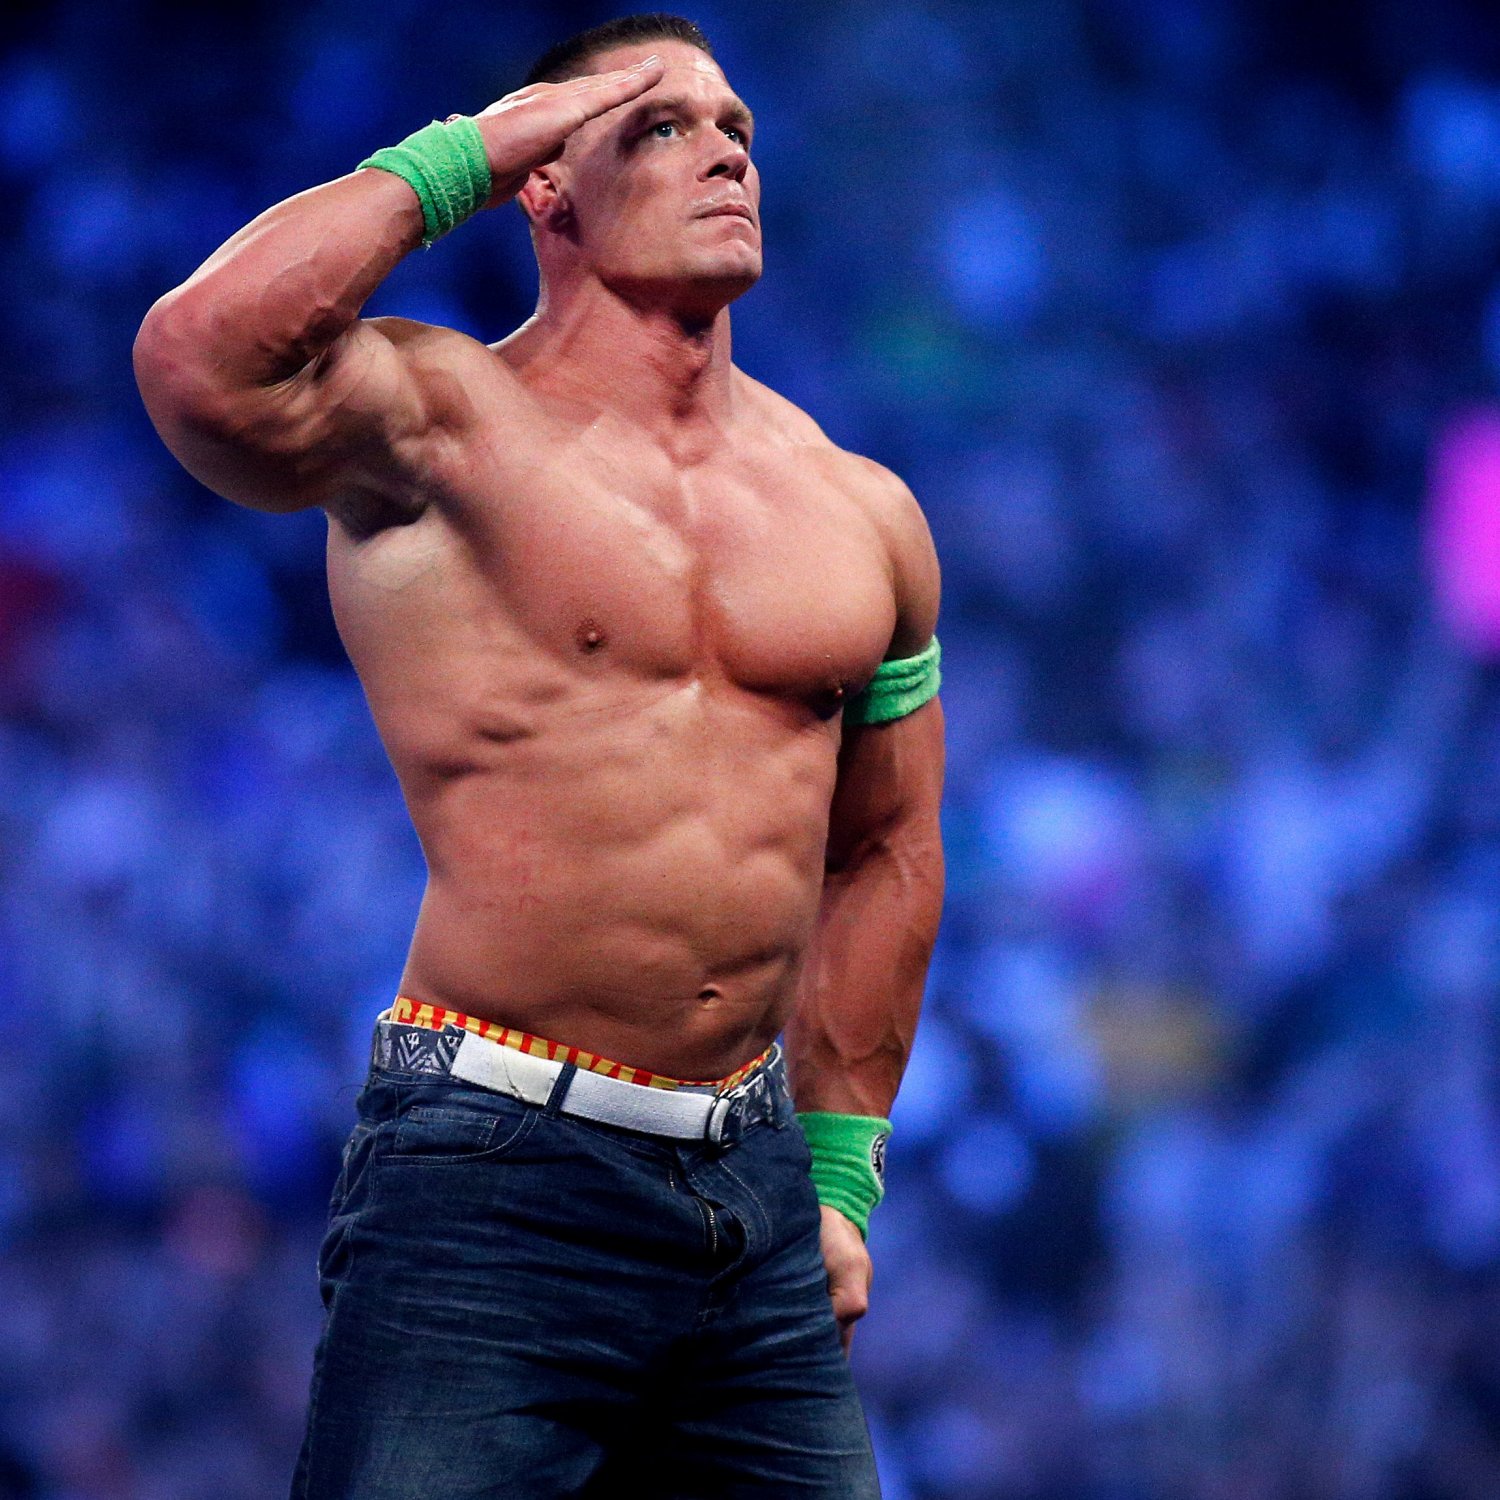 John Cena Wins WWE World Heavyweight Championship Ladder Match